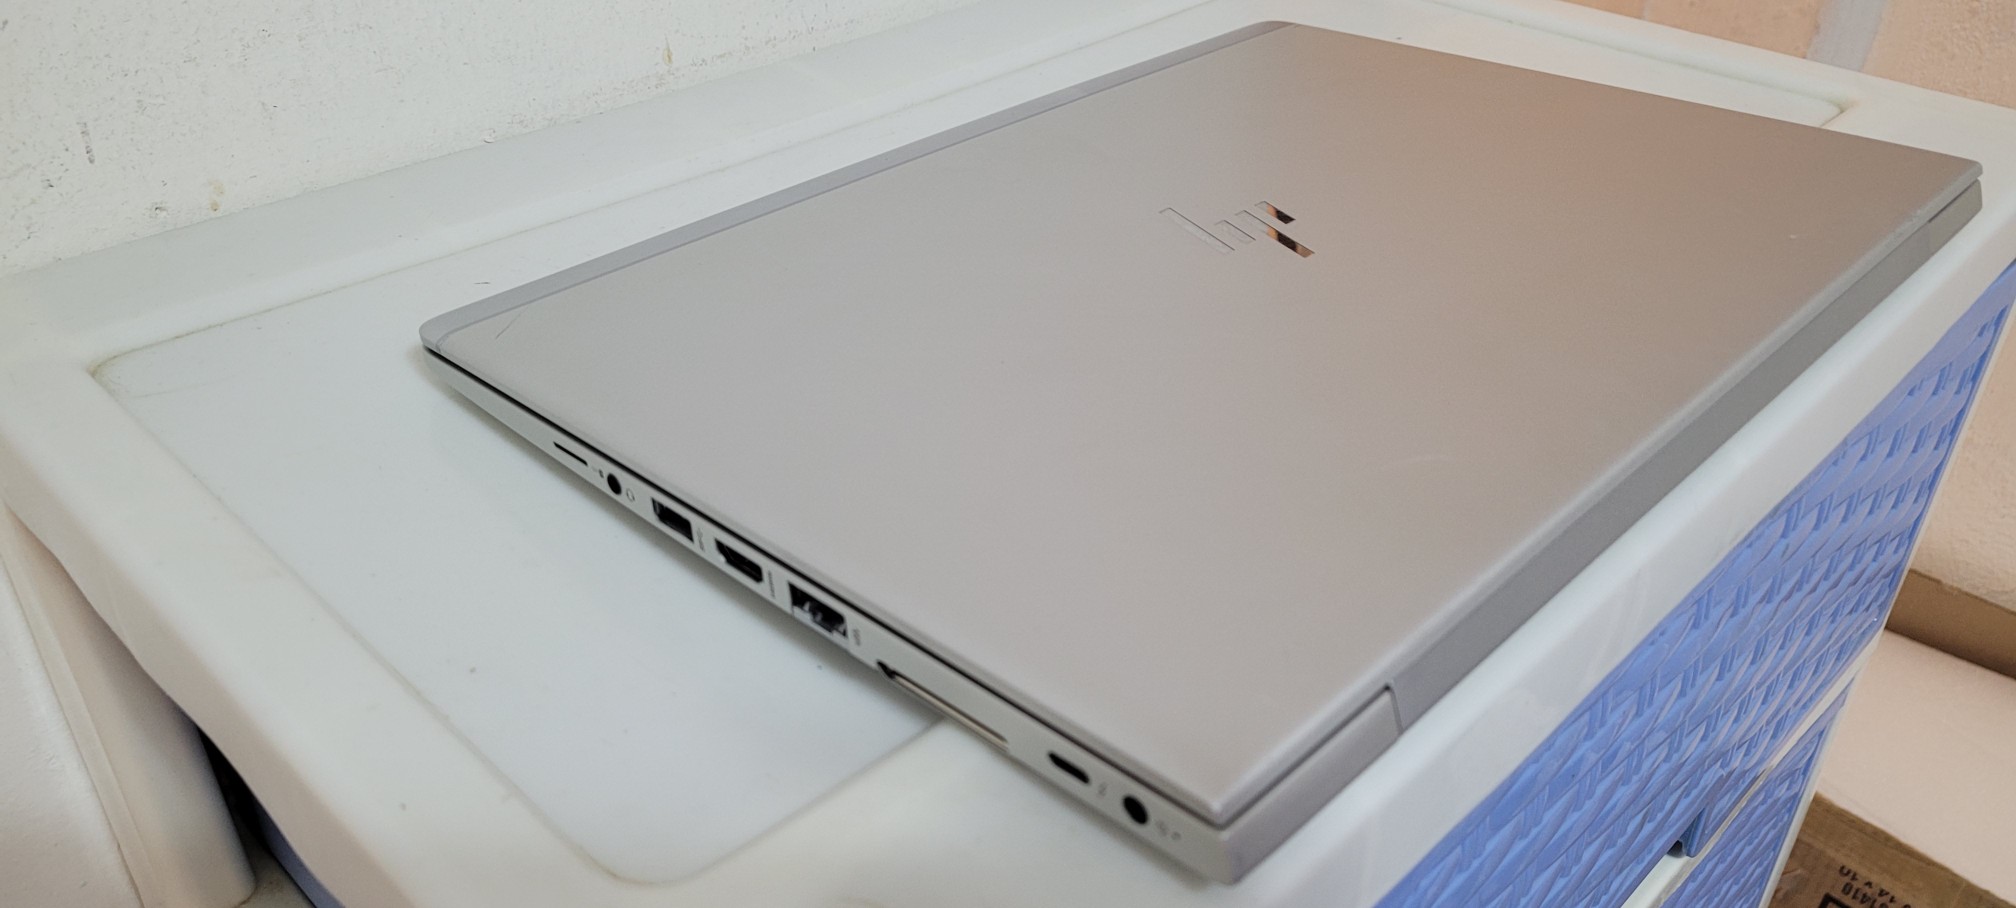 computadoras y laptops - Laptop hp Slim 14 Pulg Core i5 7ma Gen Ram 8gb ddr4 Disco 256gb SSD HDMI 2